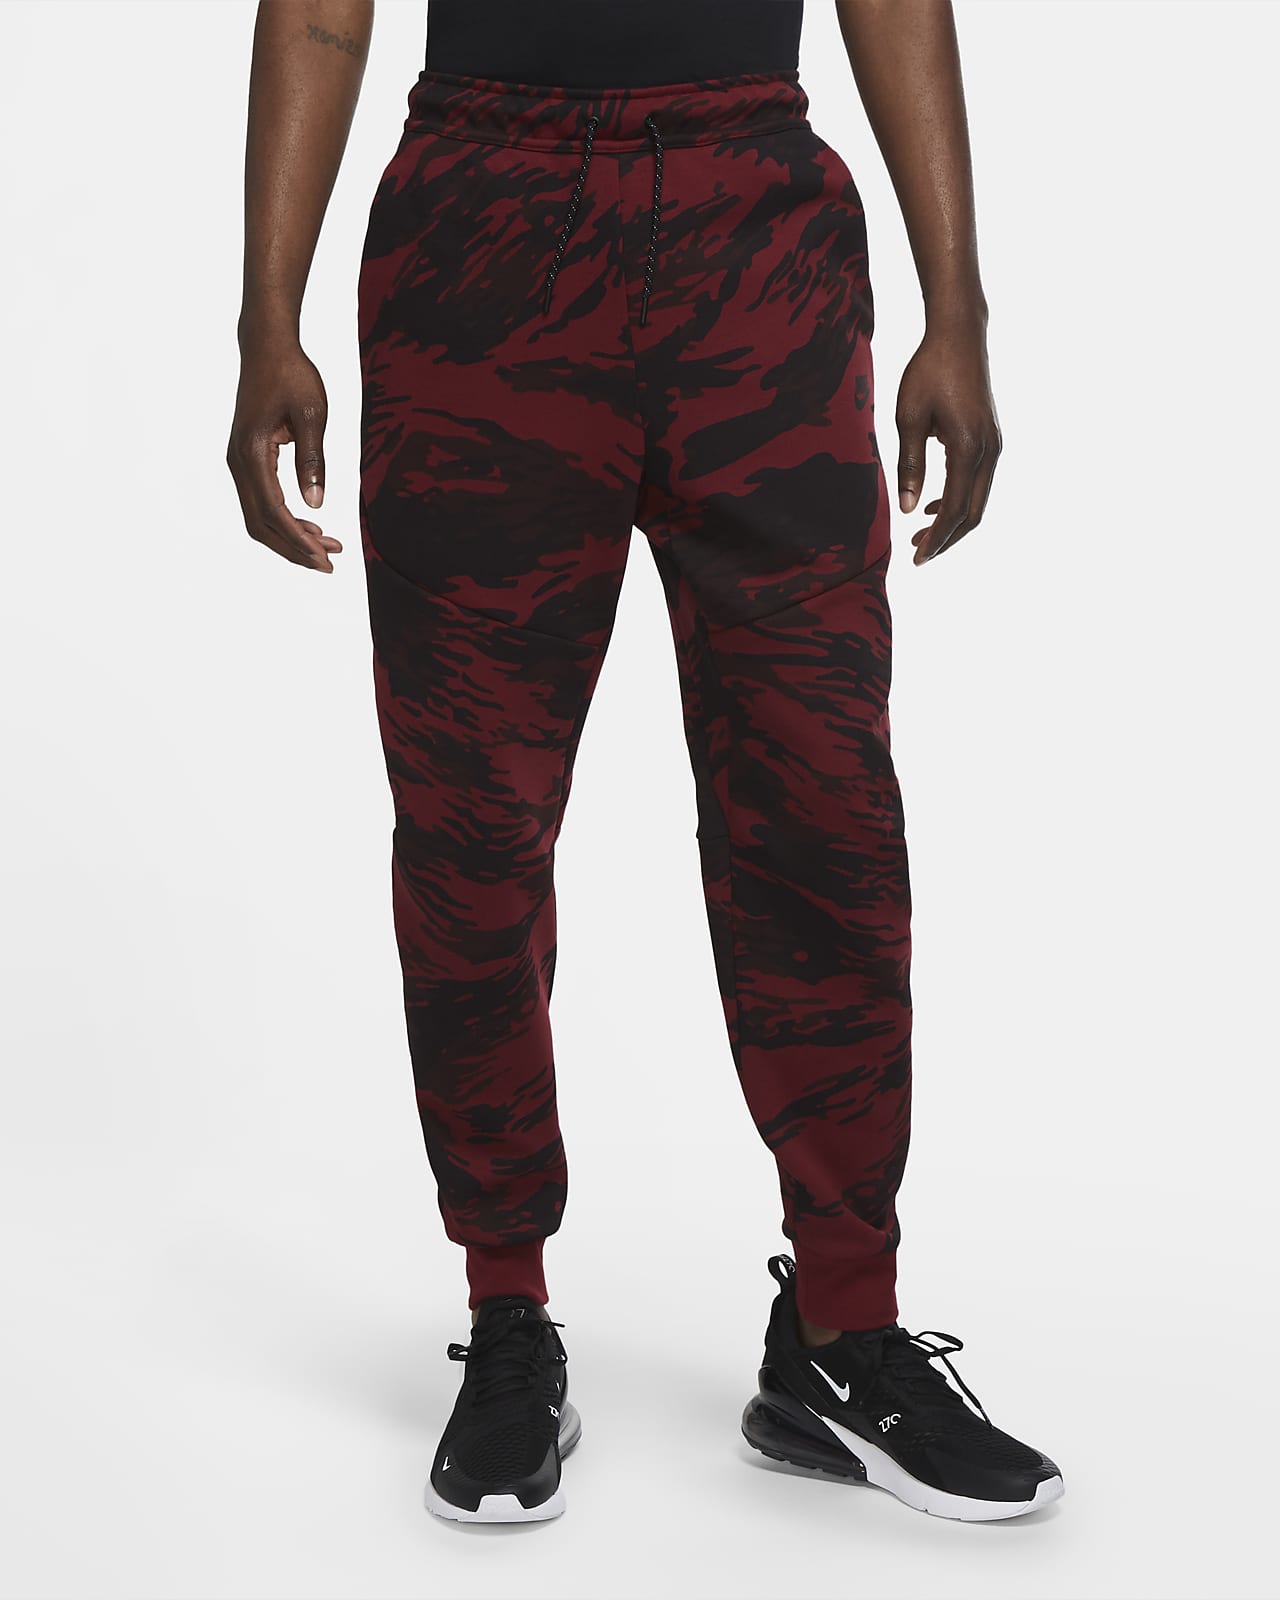 Nike Tech Fleece Men's Printed Camo 